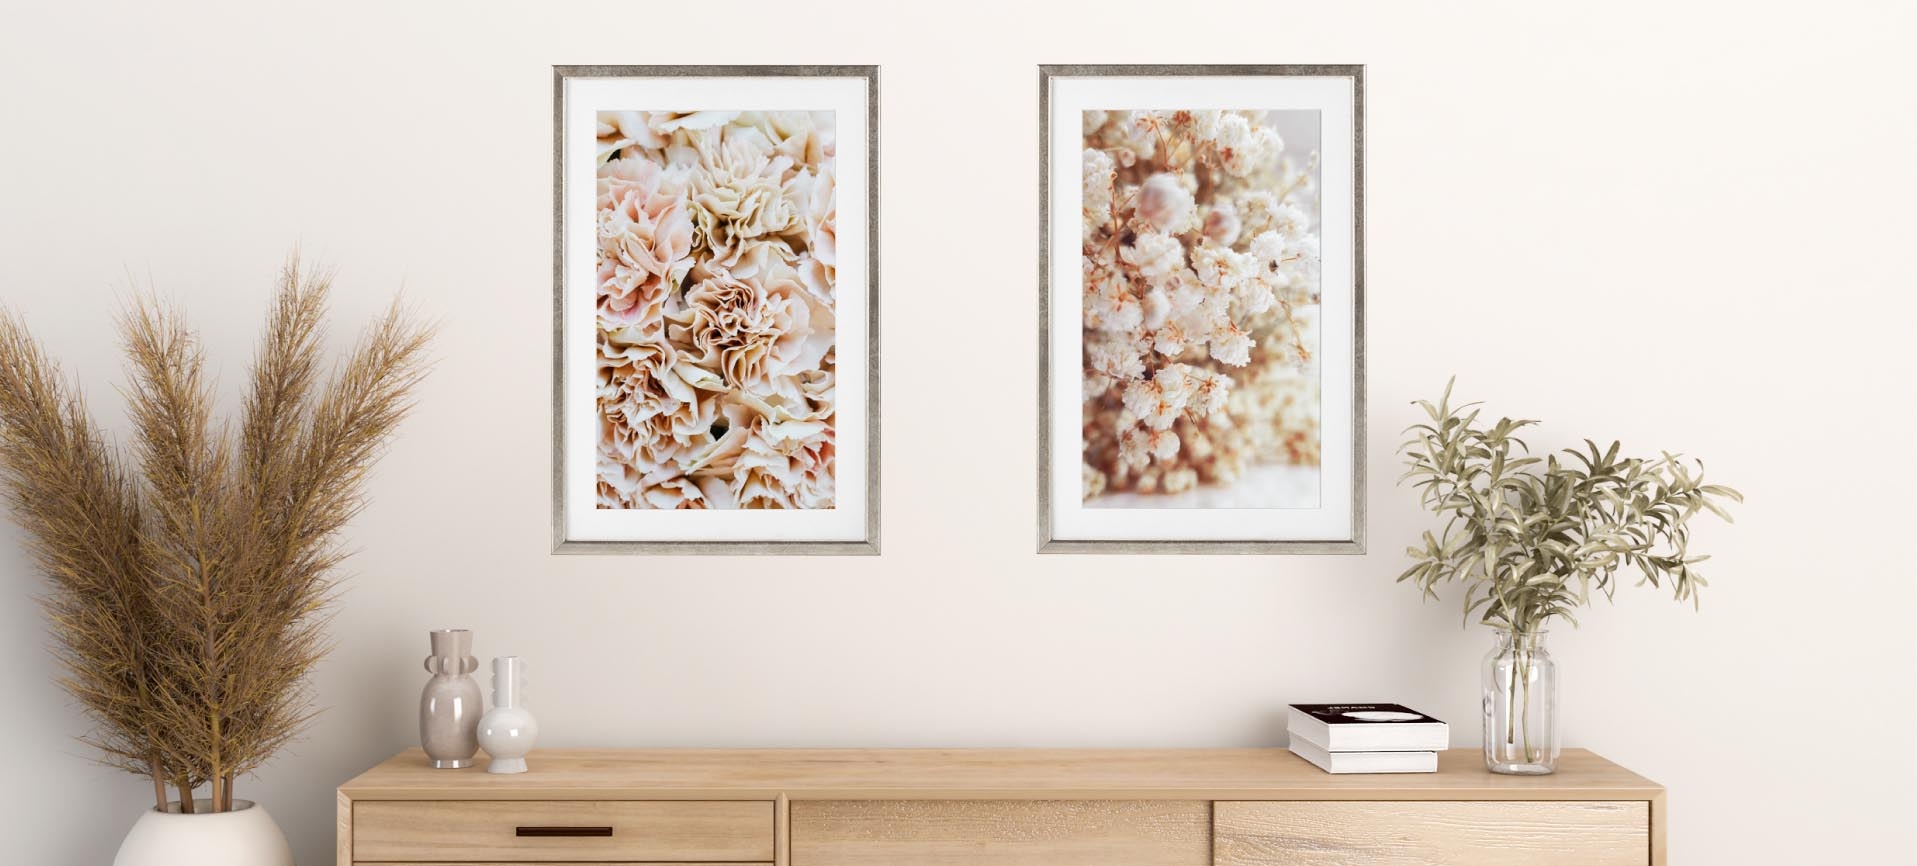 molduras de parede com fotos de flores